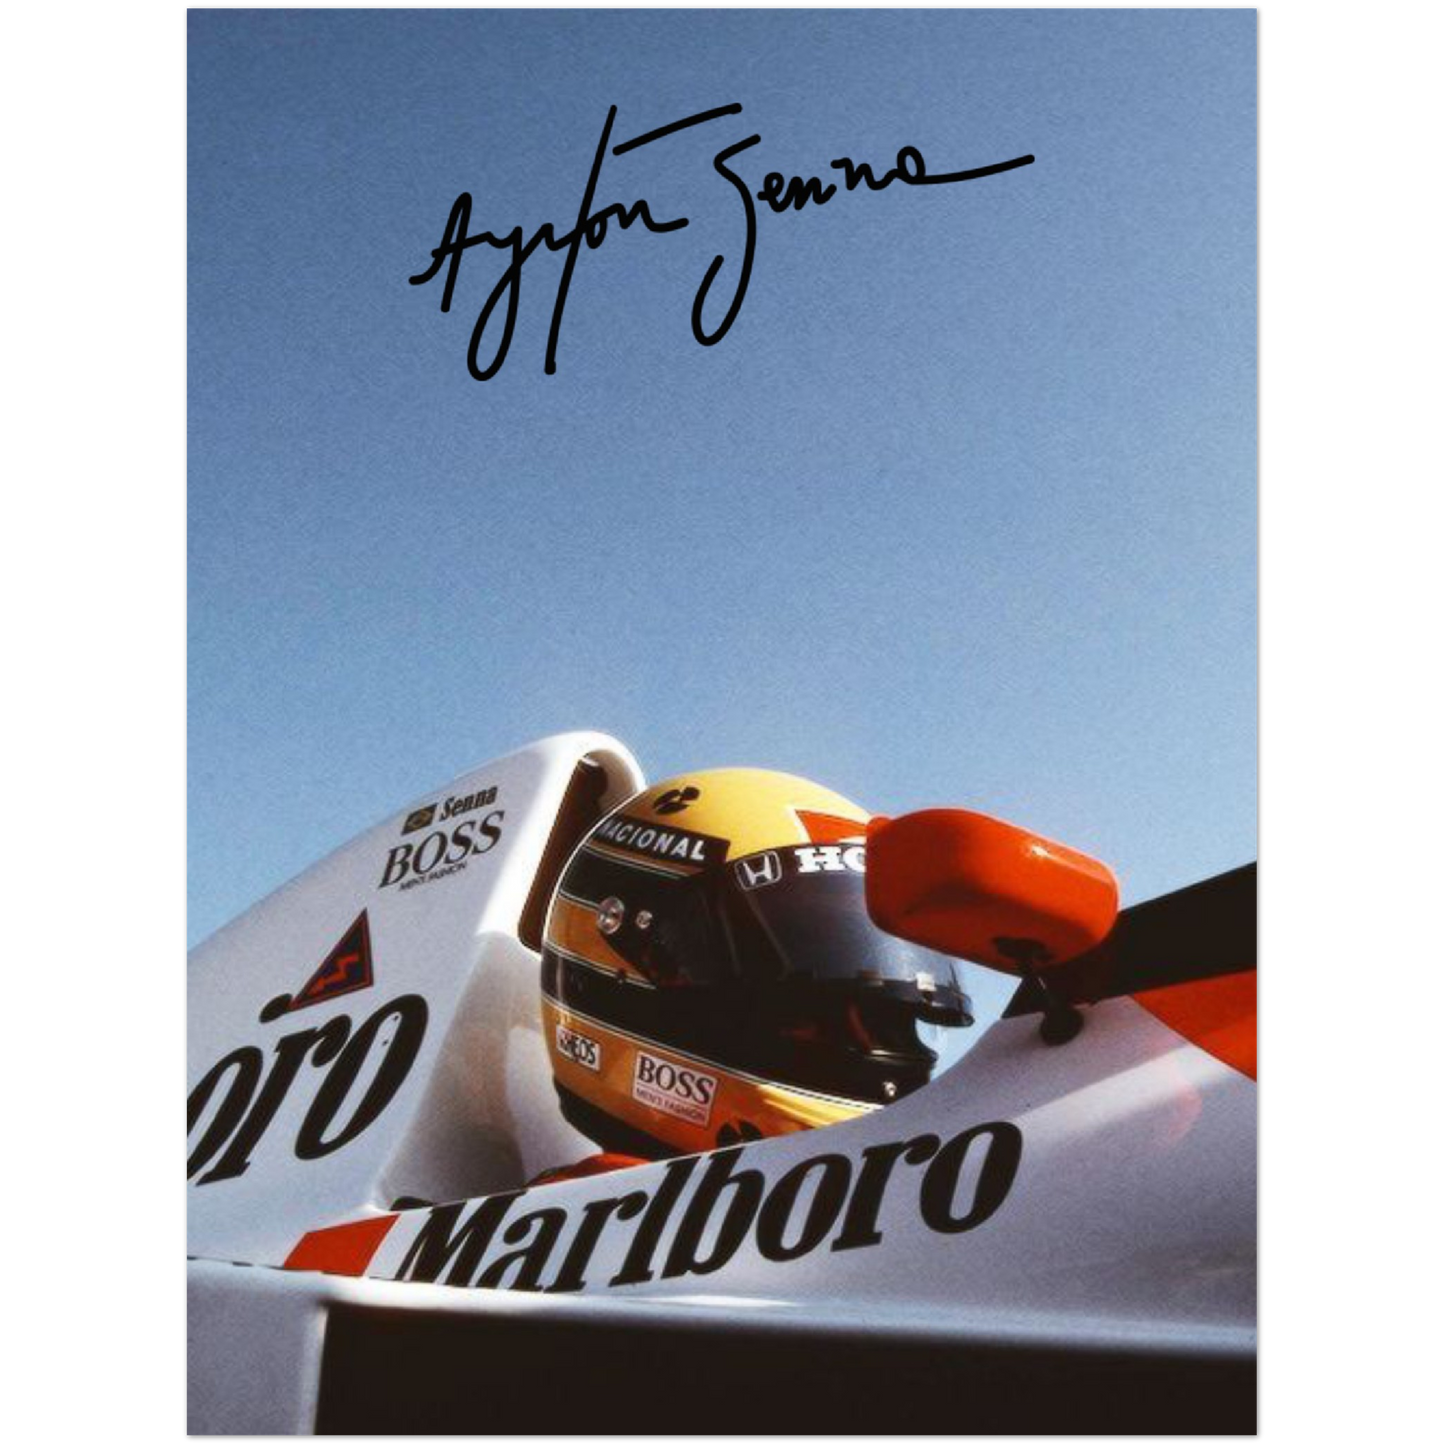 McLaren F1 - Senna